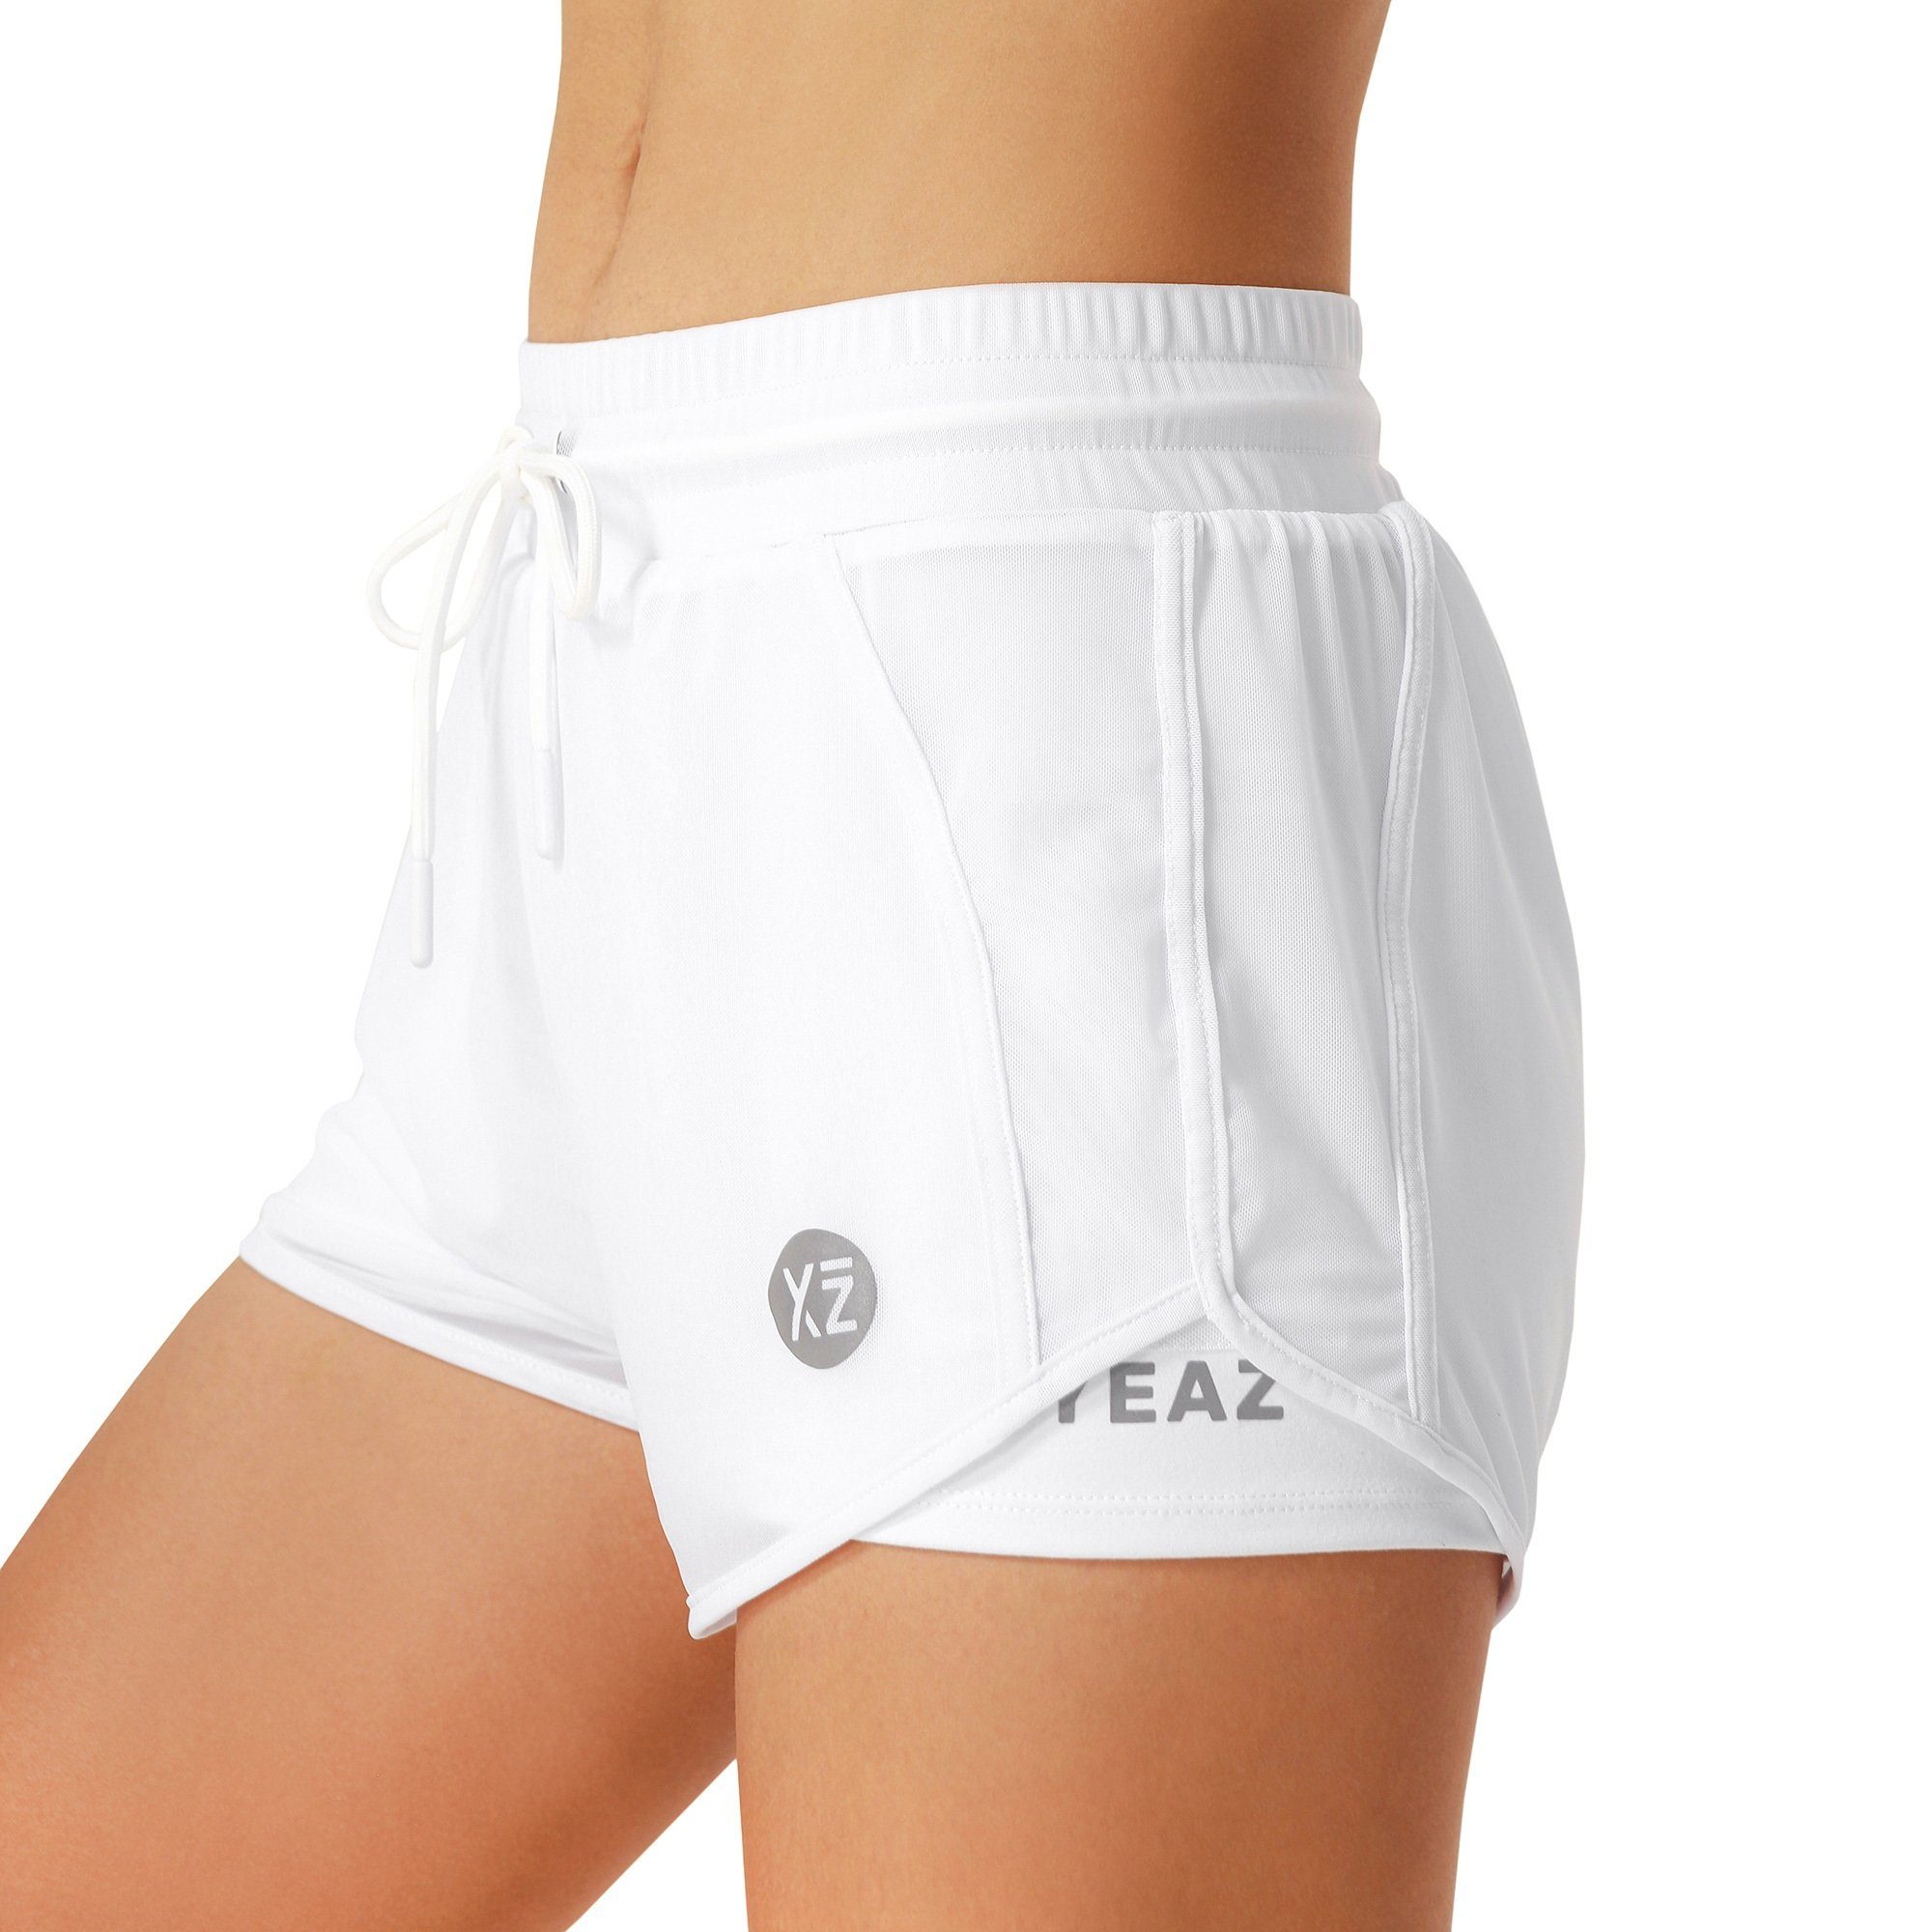 YEAZ (2-tlg) shorts weiß SQUAT Yogashorts